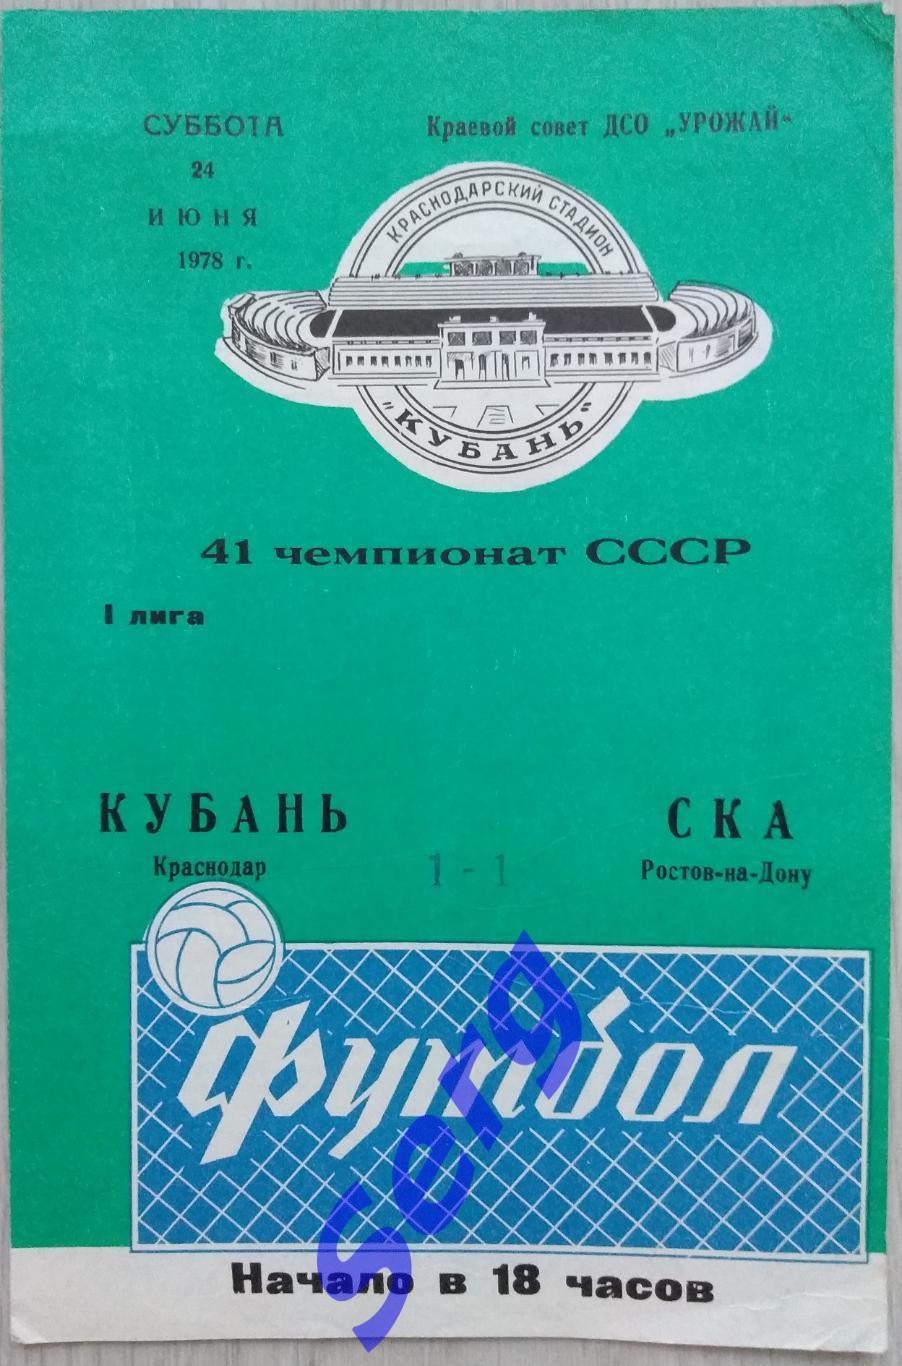 Кубань Краснодар - СКА Ростов-на-Дону - 24 июня 1978 год